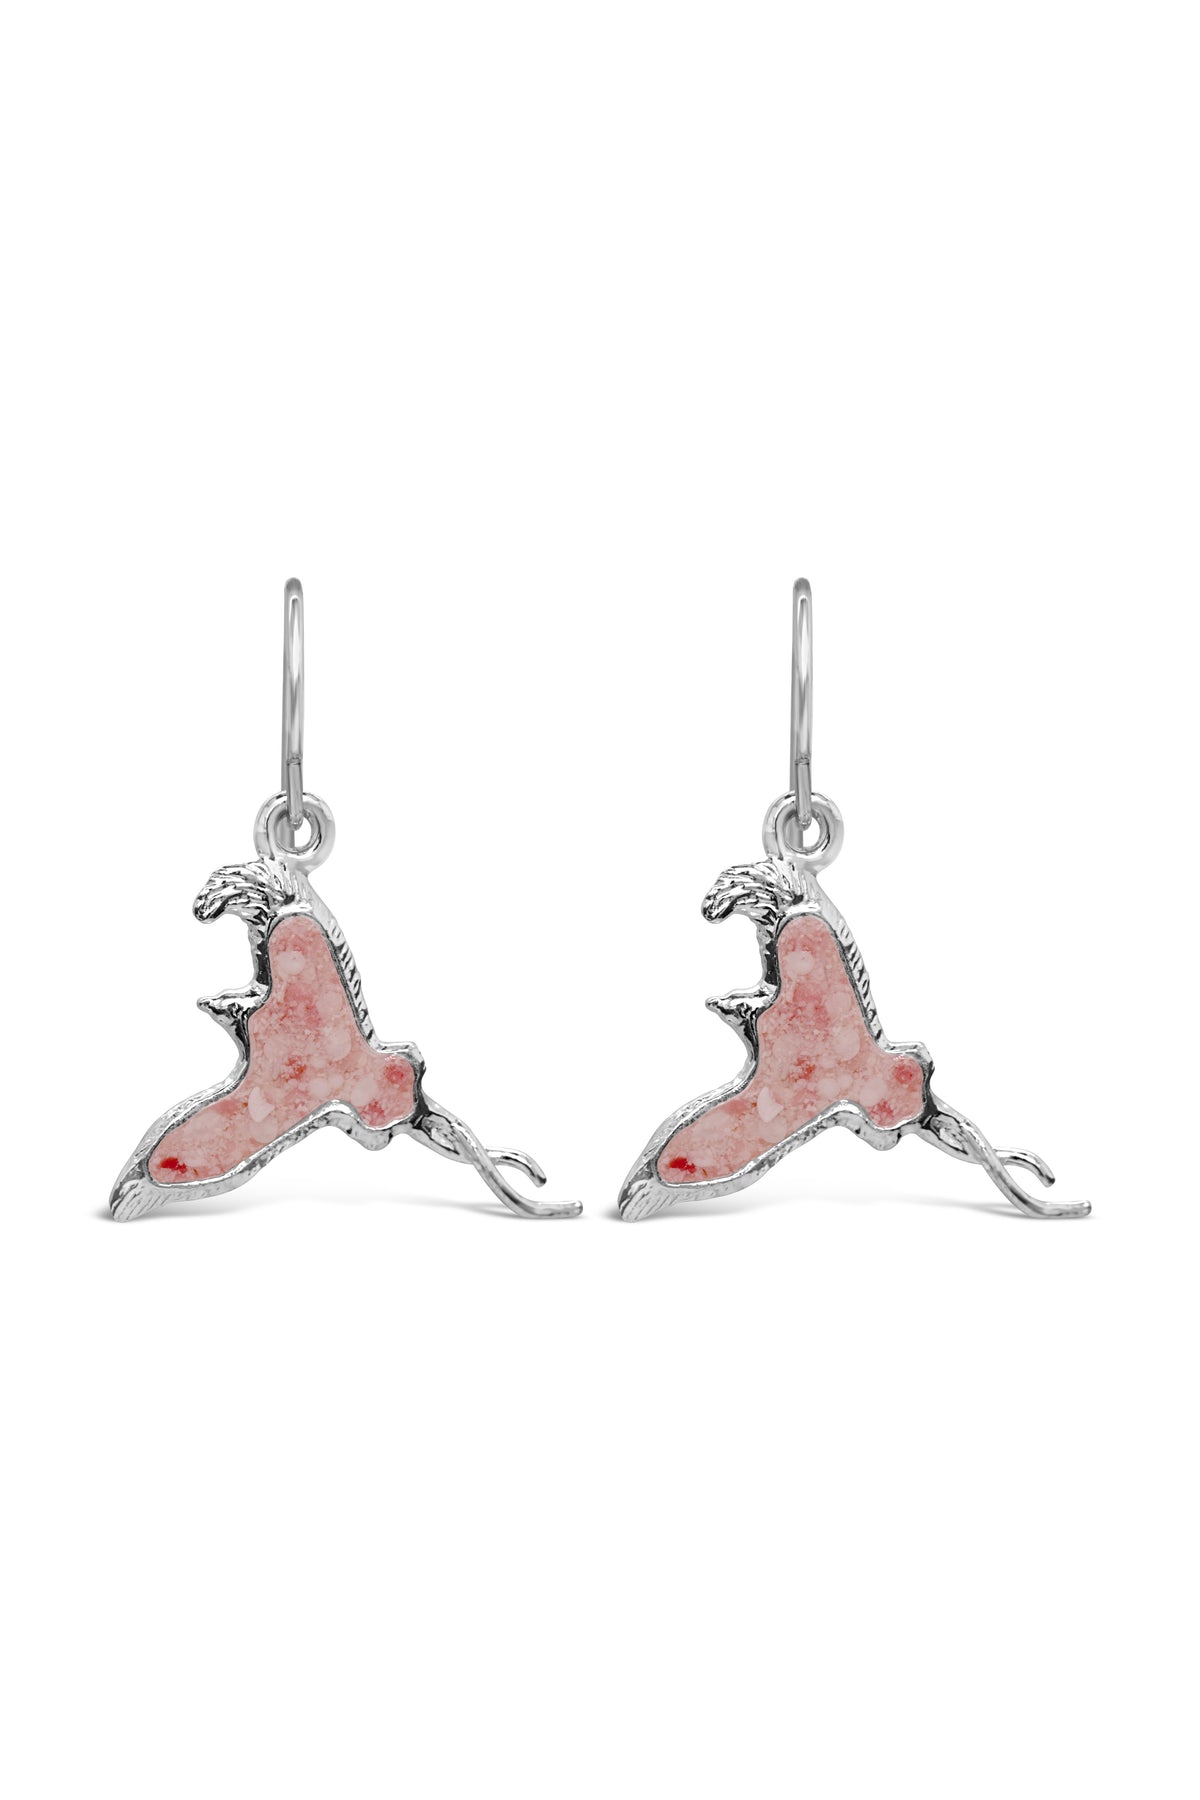 Longtail ~ Small Dangle Earrings